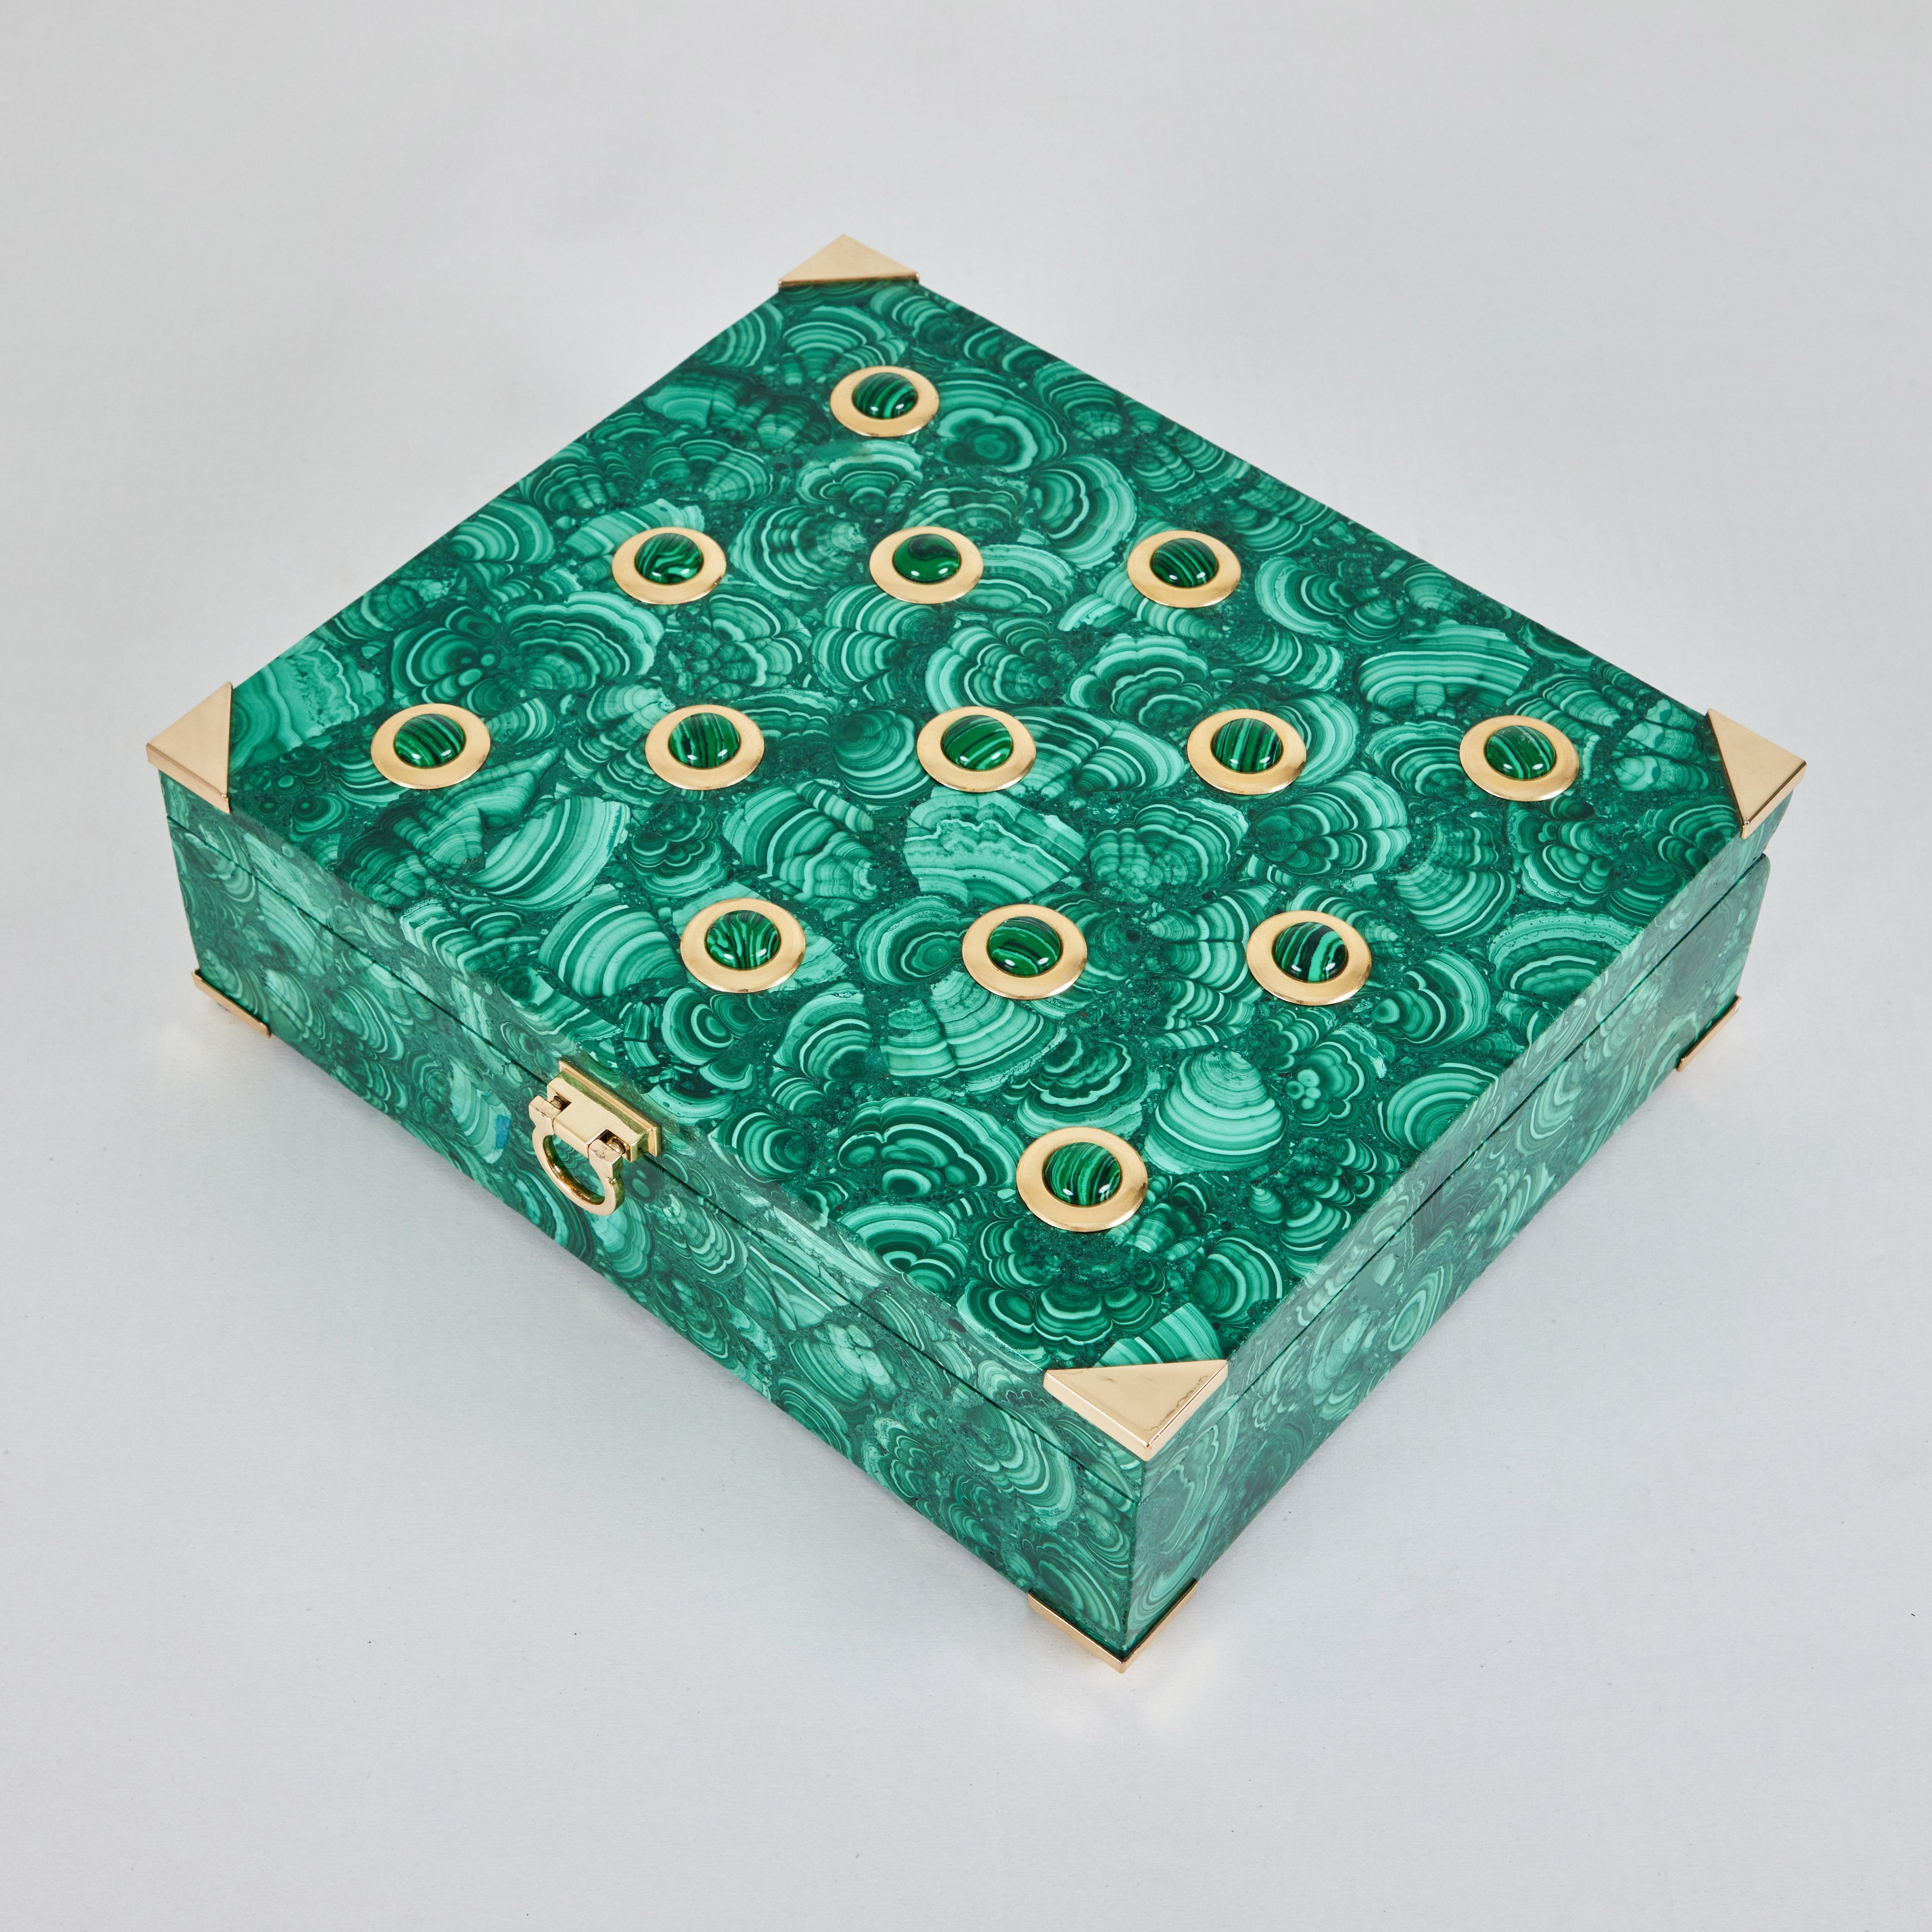 Polished A Beautiful Malachite Box with Brass Details